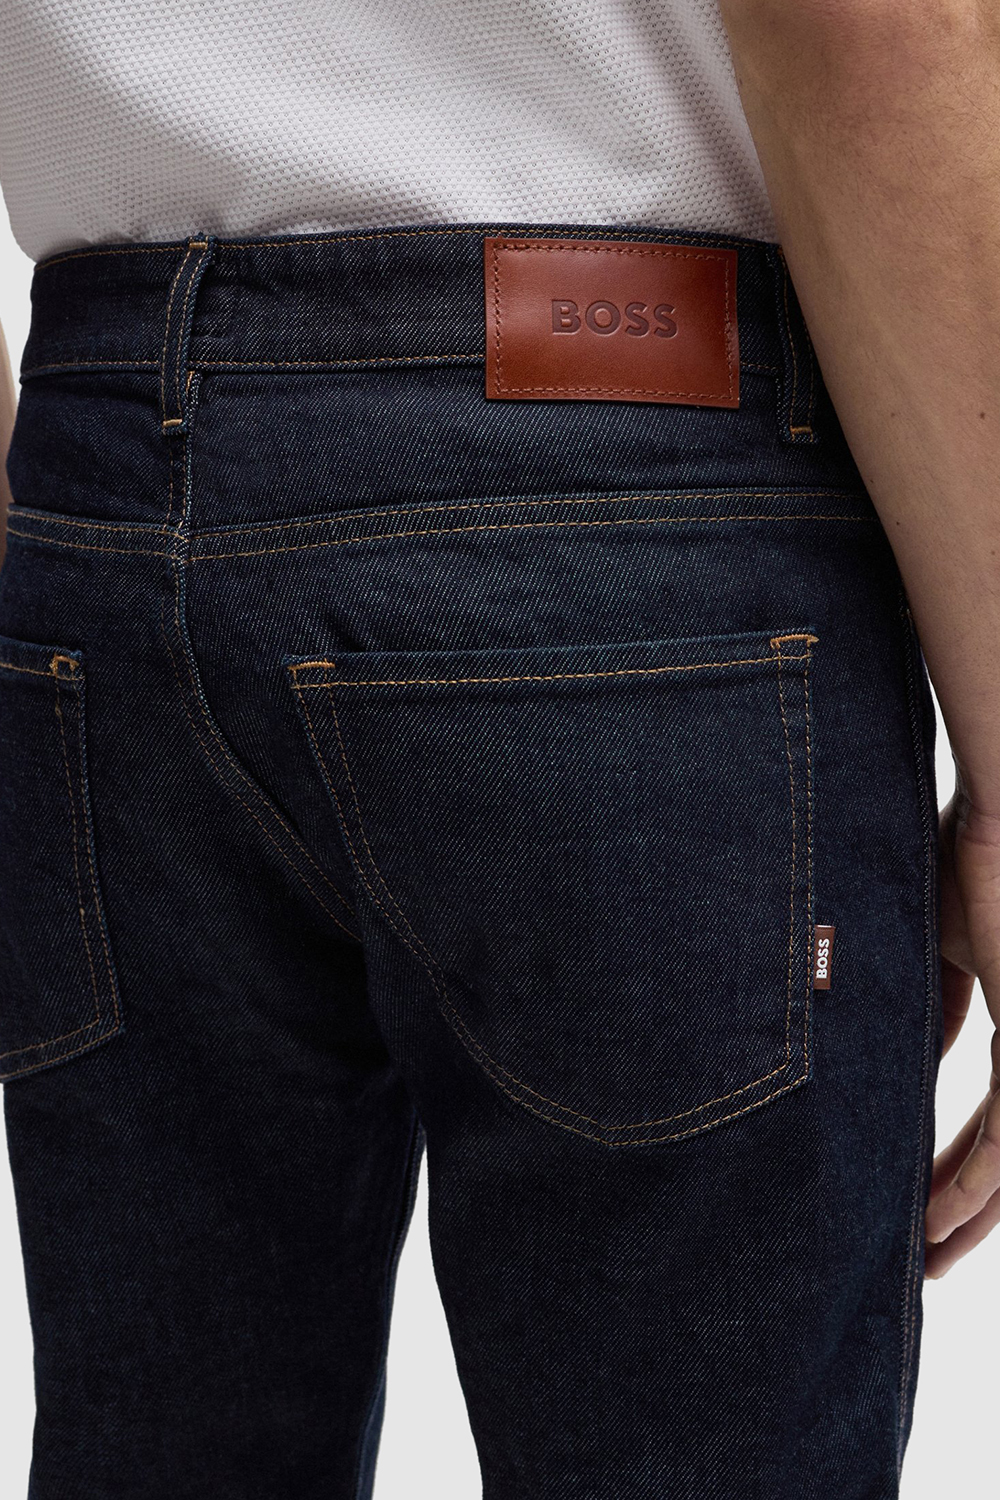 מכנסי ג'ינס סלים BOSS